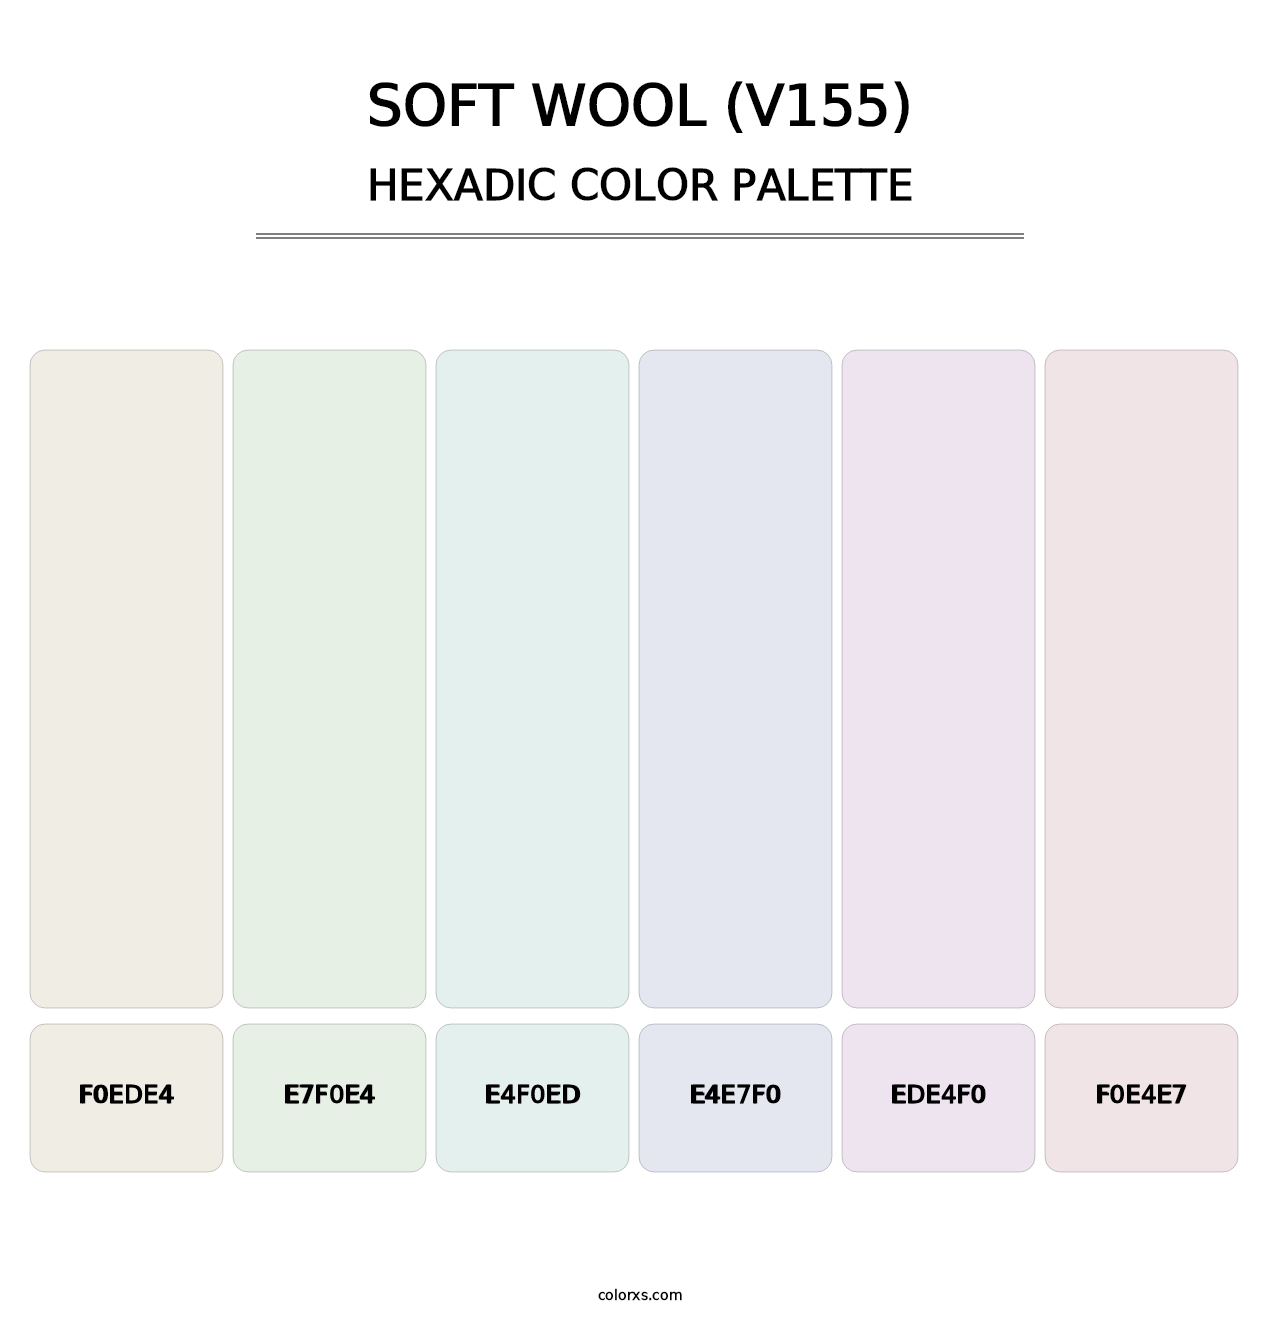 Soft Wool (V155) - Hexadic Color Palette